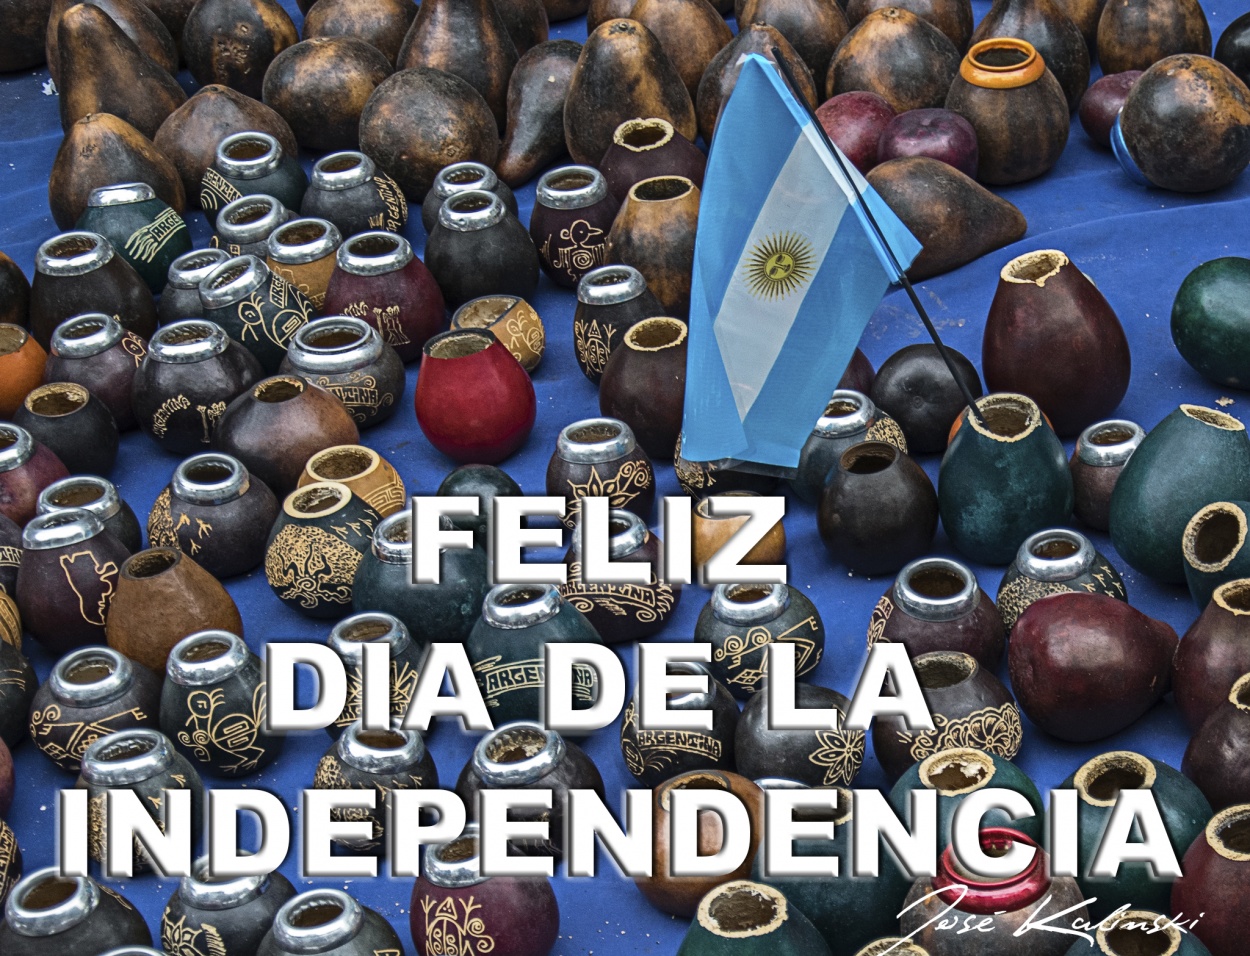 "Feliz Dia de la Independencia" de Jose Carlos Kalinski